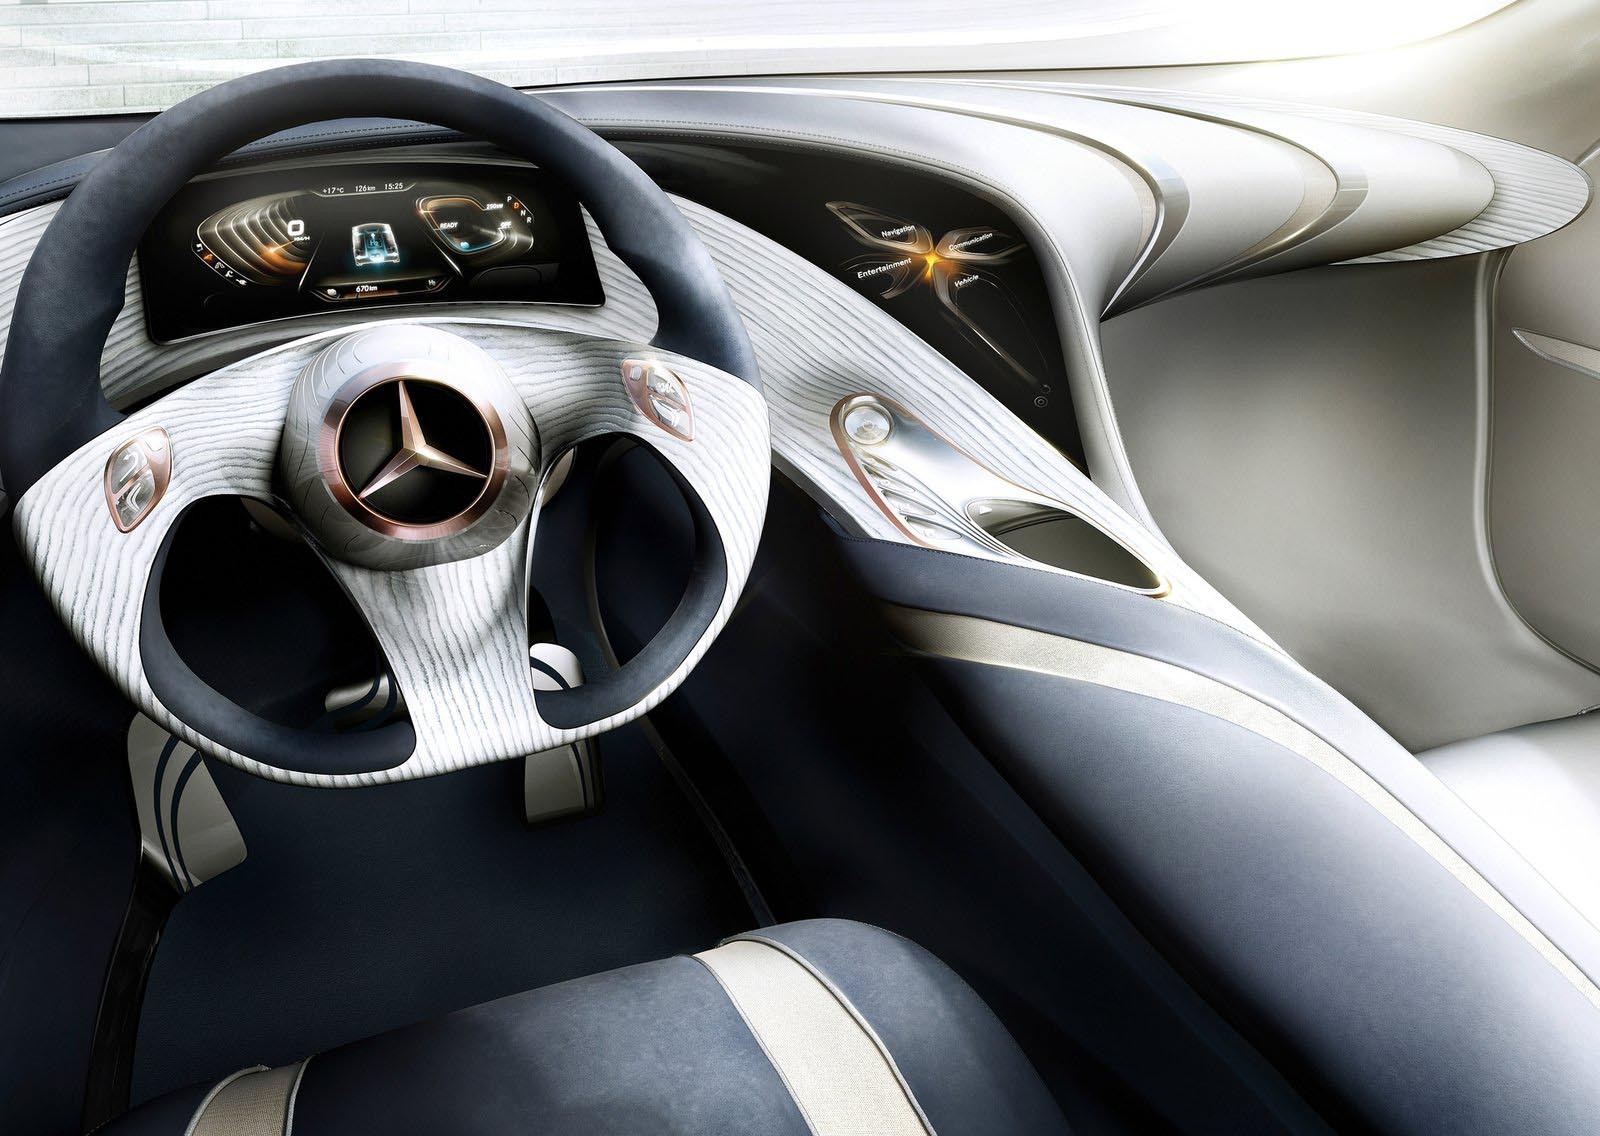 Interfata sofer-masina este realizata in Mercedes Benz F125 prin sistemul yourCOMAND